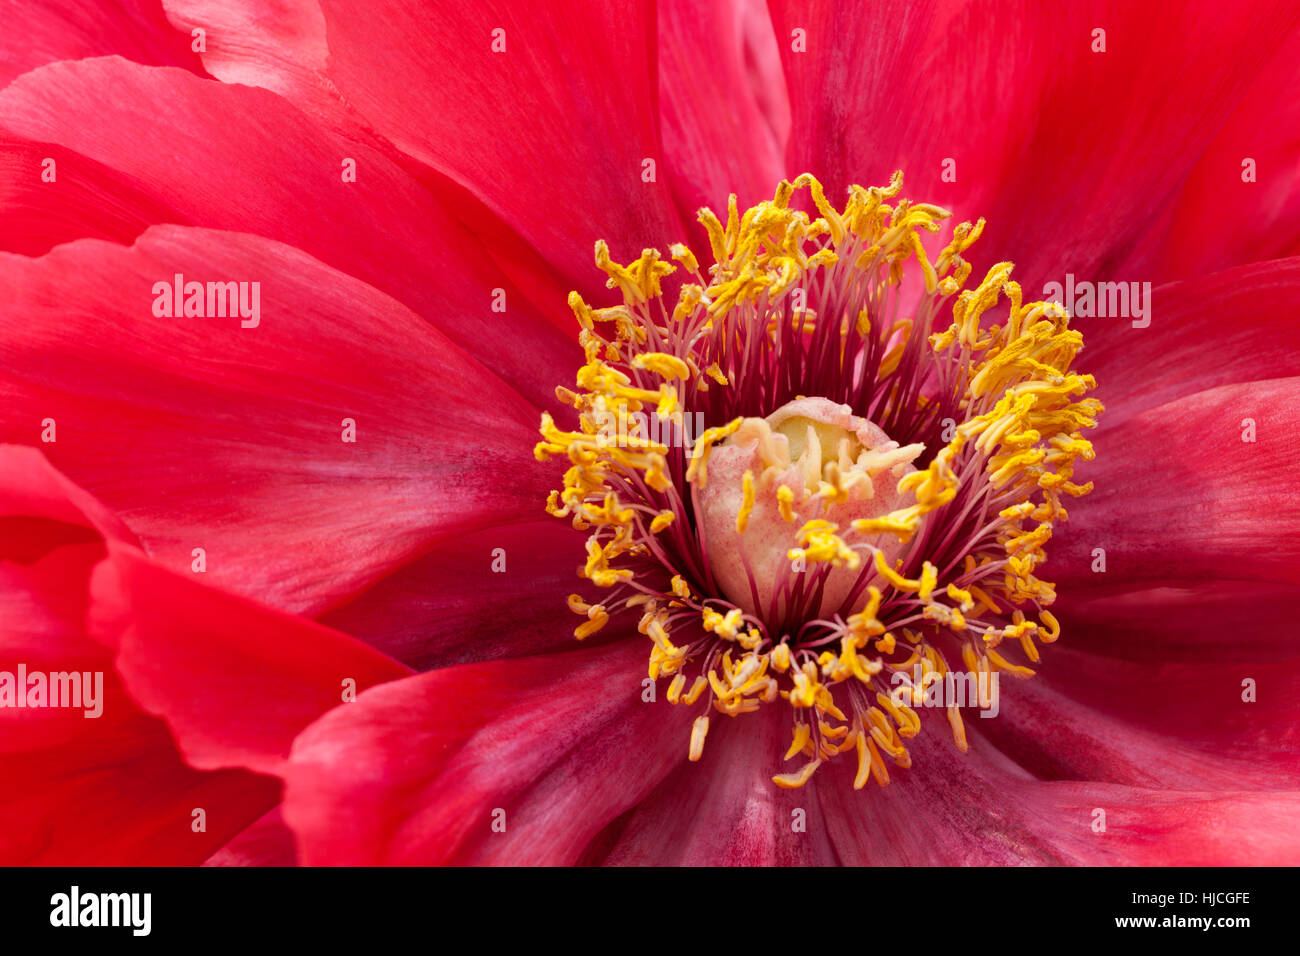 Cerca de una peonía roja pétalos con centro de estambres con el polen de las anteras de rodamiento Foto de stock